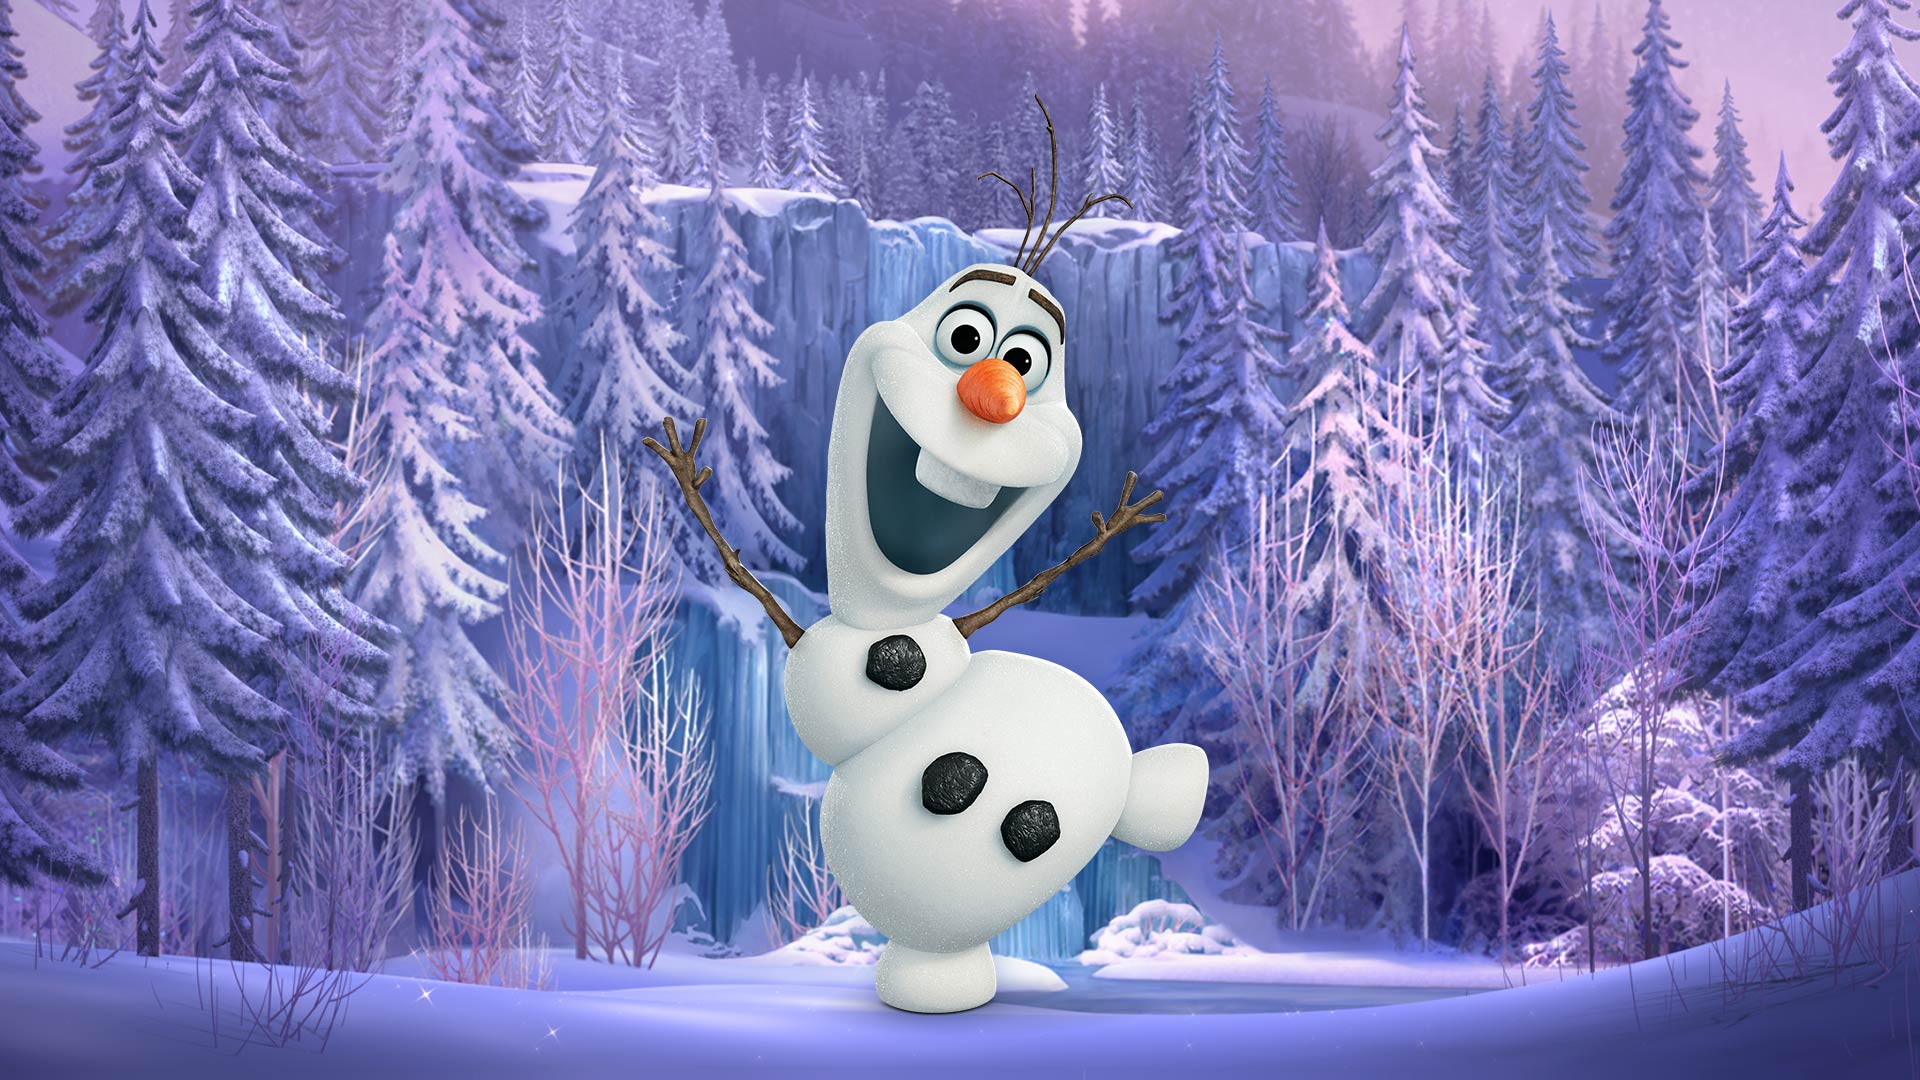 Frozen Free Fall: Batalha das Bolas de Neve  Frozen free fall, Snowball  fight, Frozen free